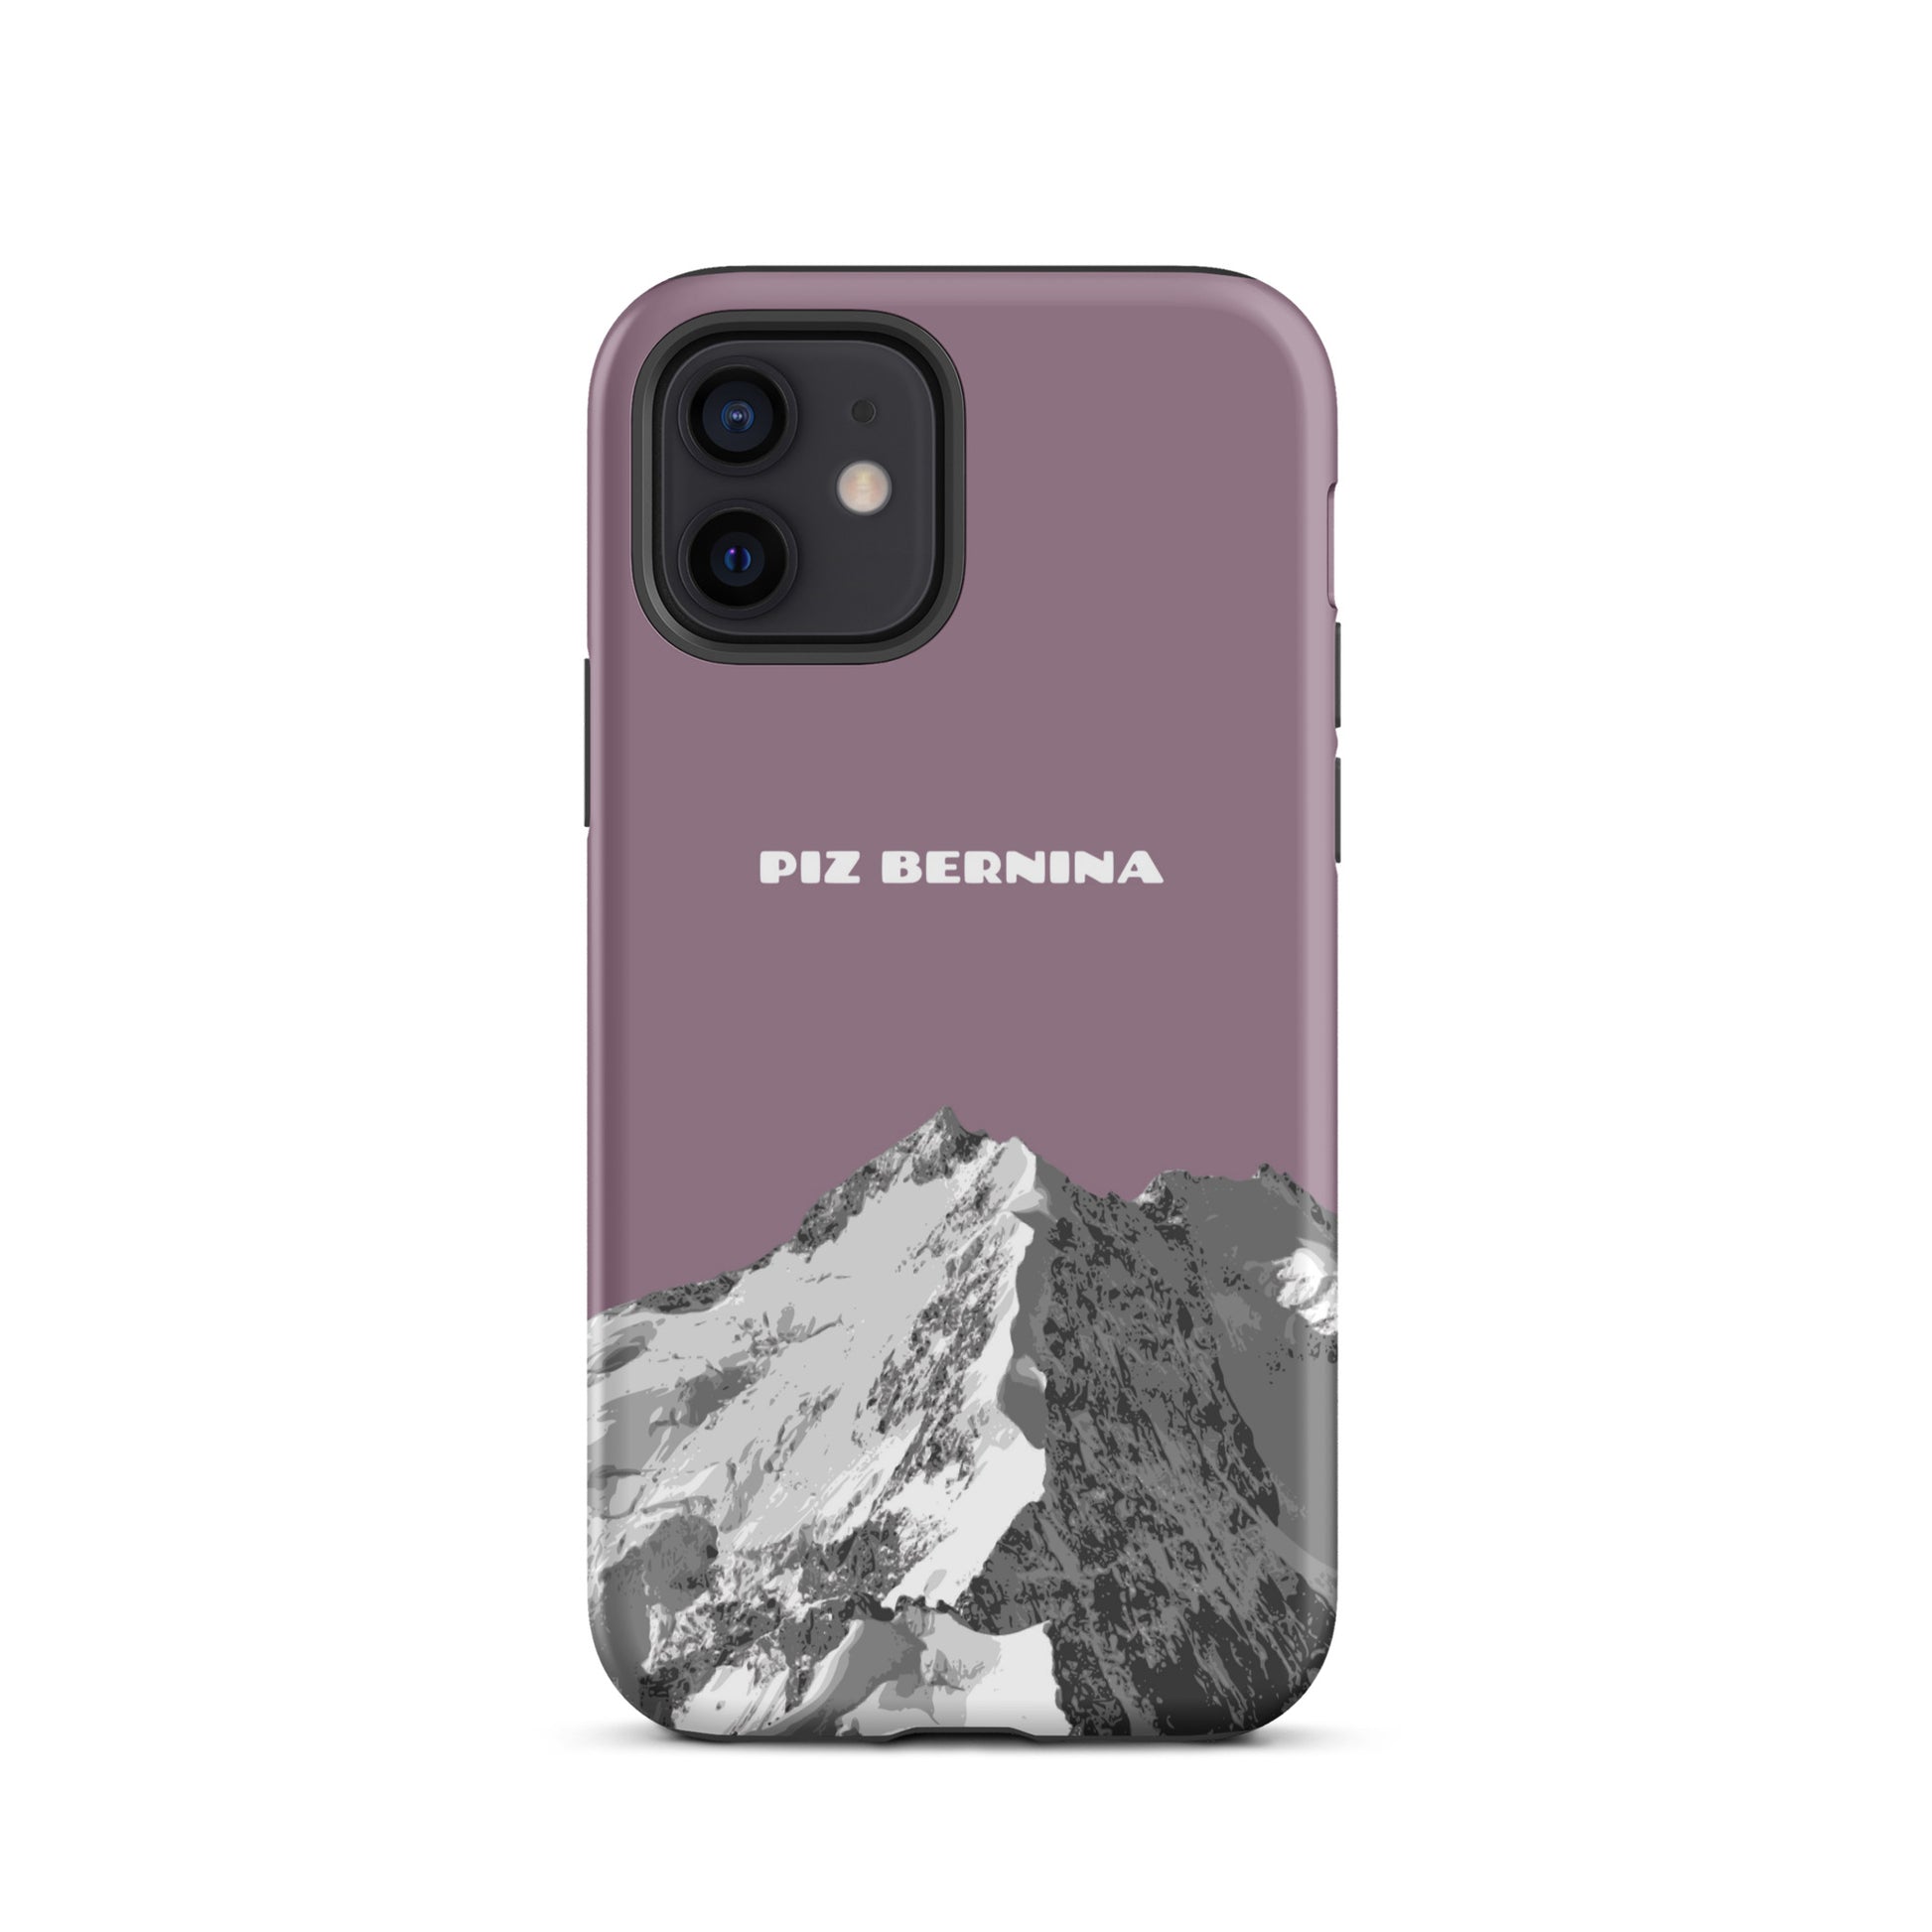 Hülle für das iPhone 12 von Apple in der Farbe Pastellviolett, dass den Piz Bernina in Graubünden zeigt.